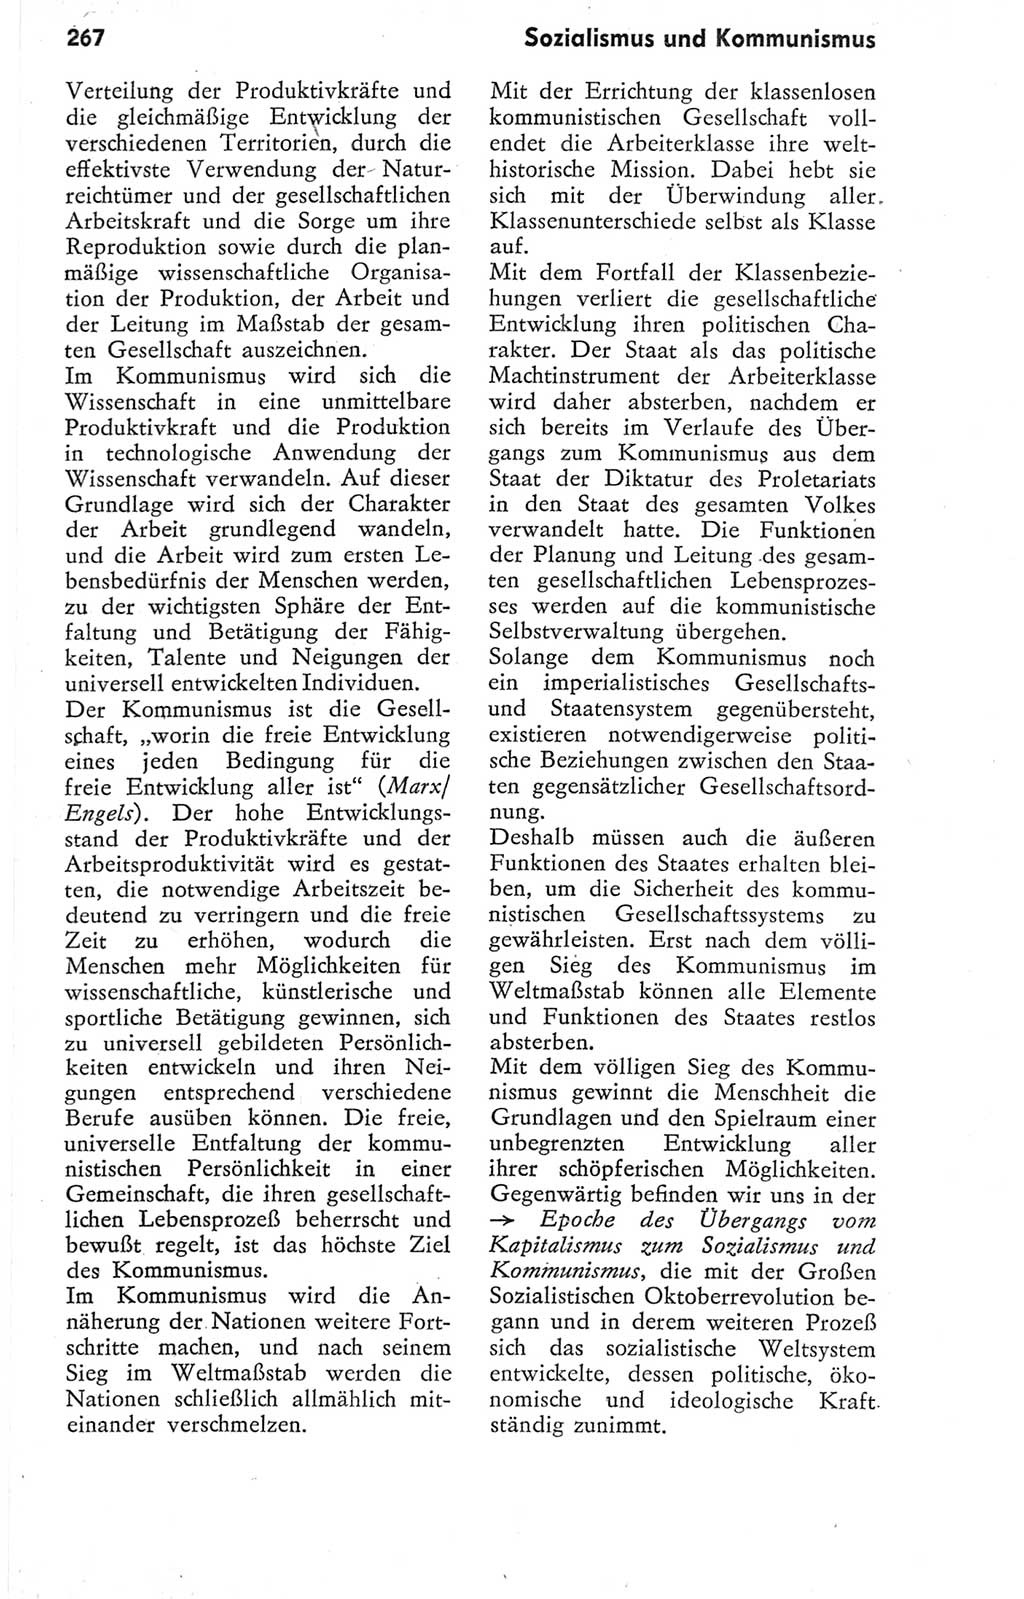 Kleines Wörterbuch der marxistisch-leninistischen Philosophie [Deutsche Demokratische Republik (DDR)] 1974, Seite 267 (Kl. Wb. ML Phil. DDR 1974, S. 267)